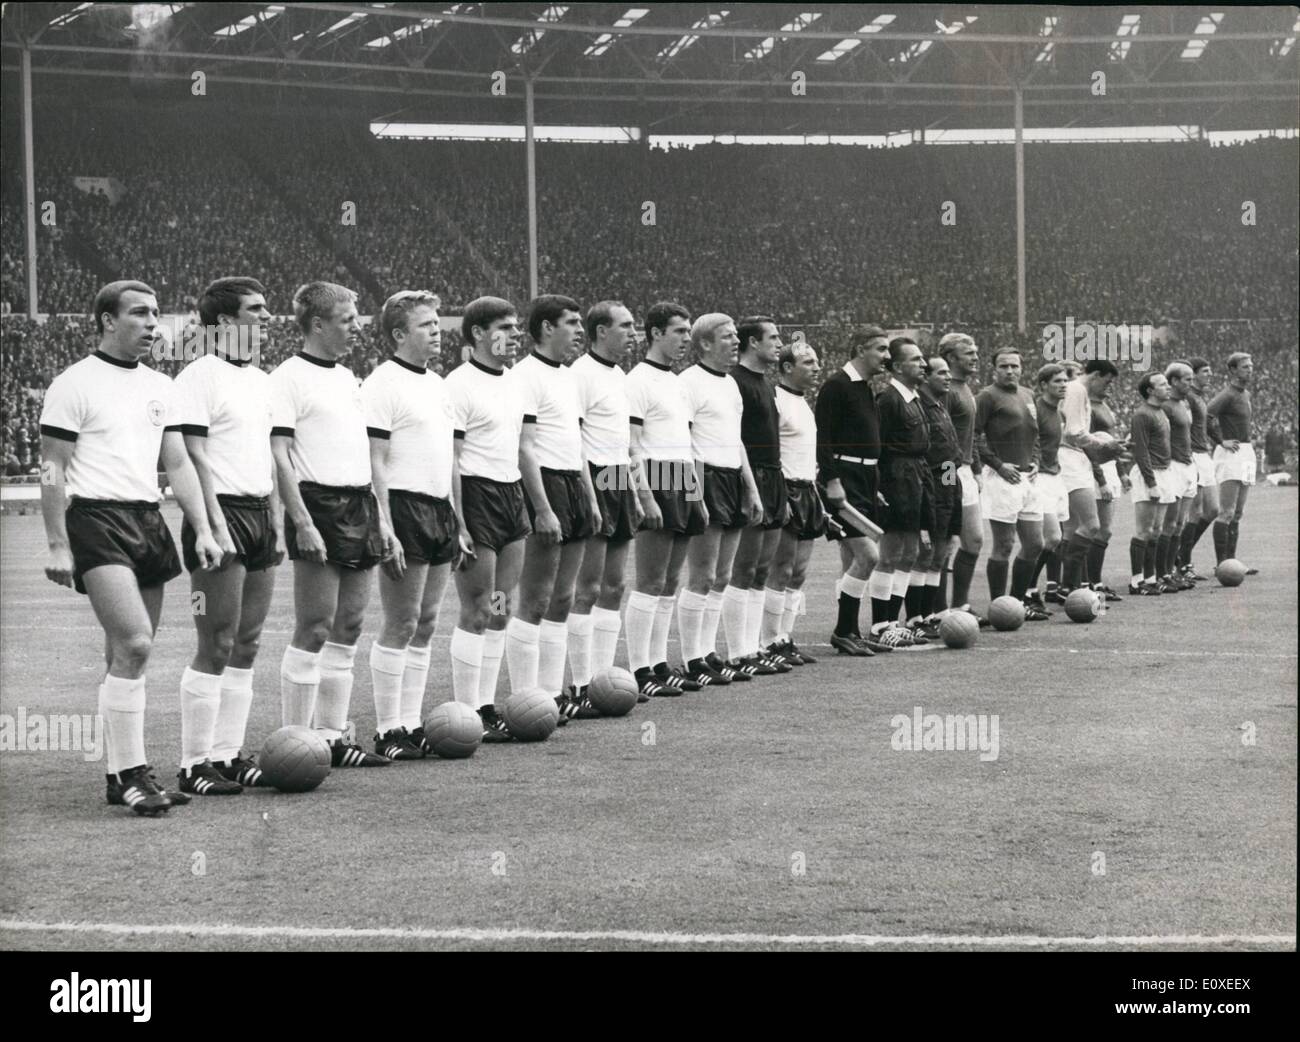 7. Juli 1966 - Fußball-WM England gegen Bundesrepublik Deutschland WM-Finale im Wembley-Stadion. Foto zeigt Aline von der westdeutschen (nächste Kamera) und England-Teams vor dem Start des Spiels. Stockfoto